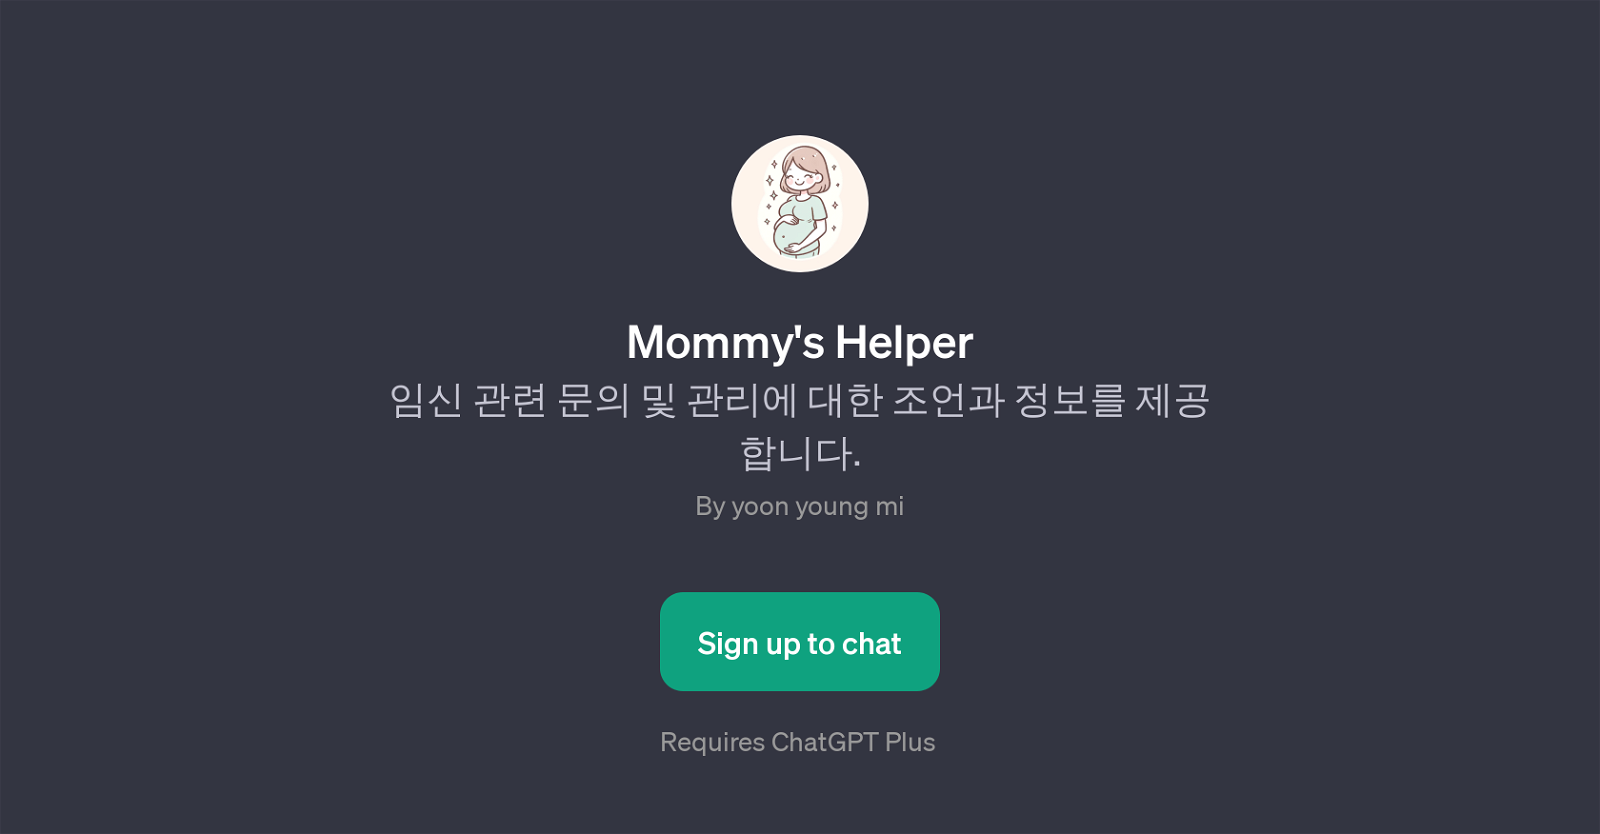 Mommy's Helper website